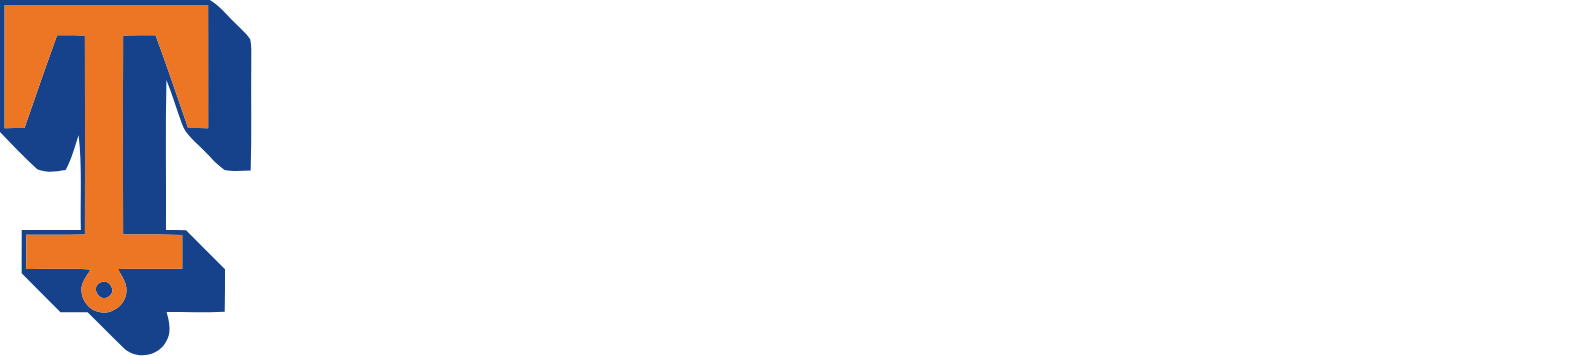 Tidewater logo large for dark backgrounds (transparent PNG)